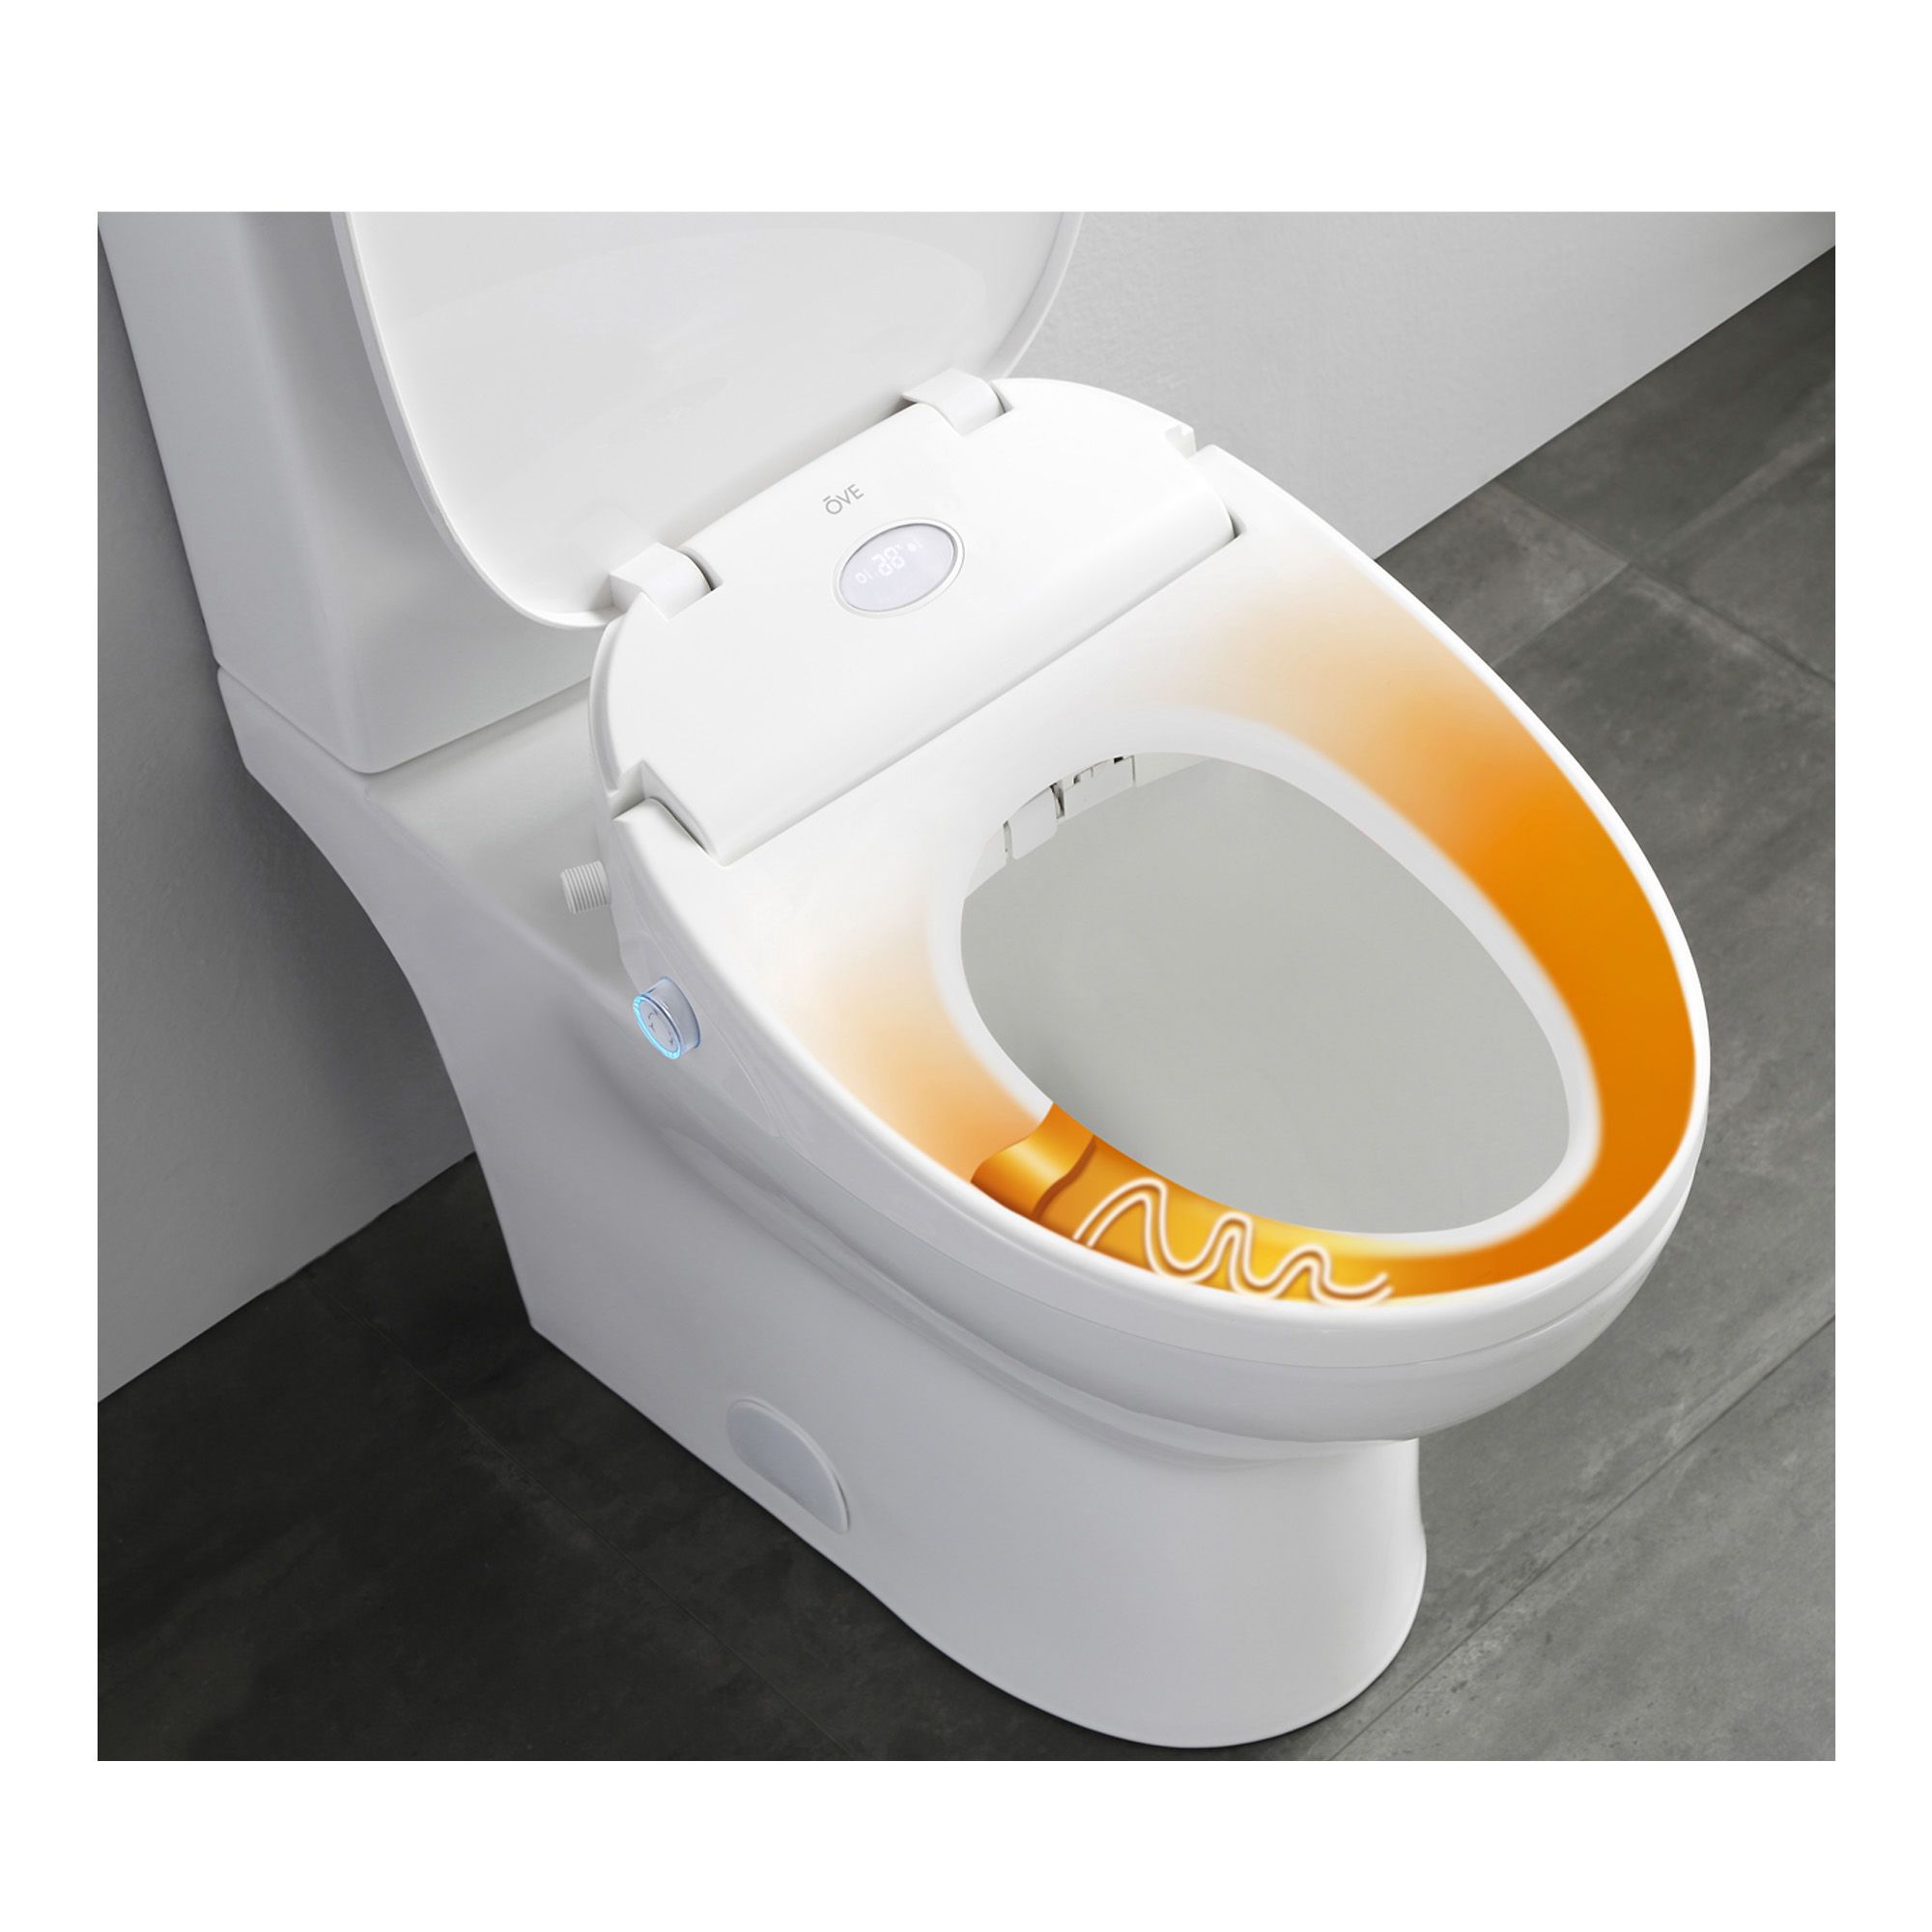 Toilette cuvette allongée et siège de bidet intelligent combinés